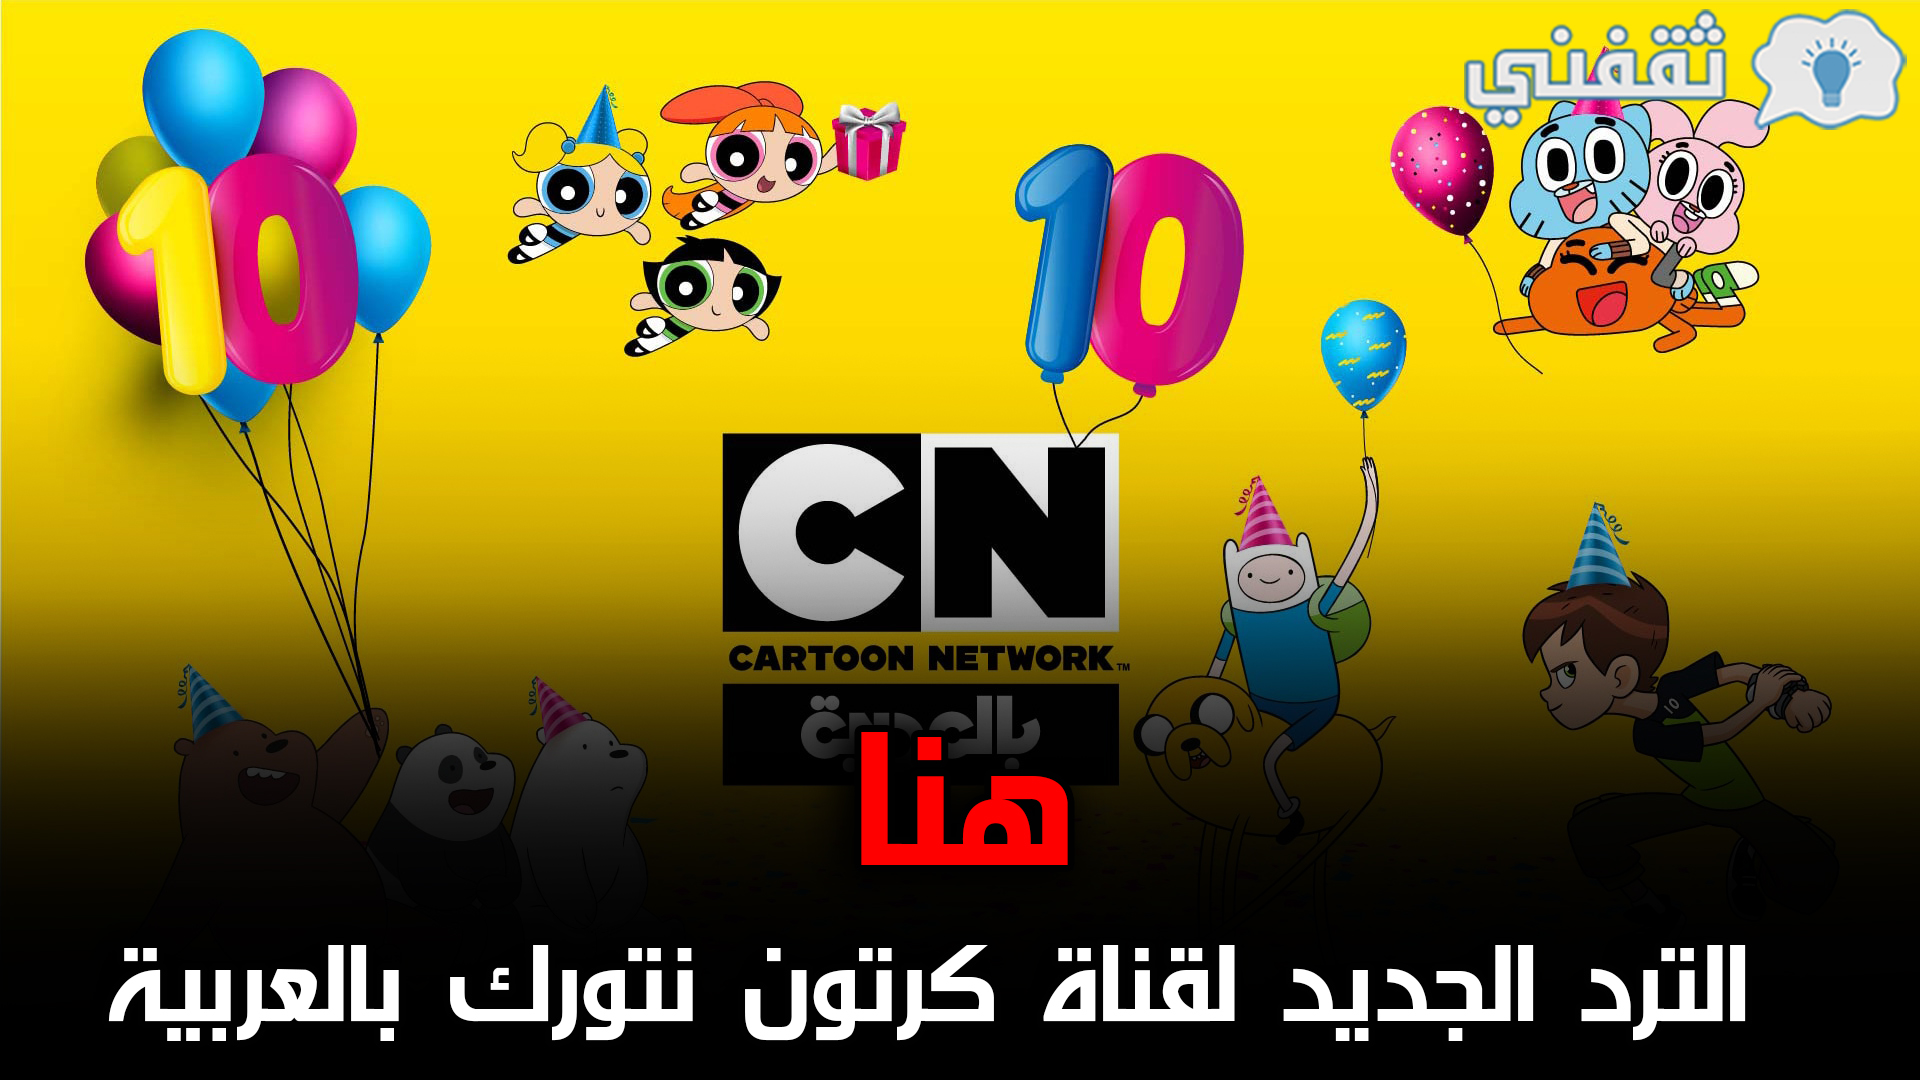 cn arabia | تردد قناة كرتون نتورك بالعربية الجديد 2021 على قمر النايل سات وعرب سات بجودة HD